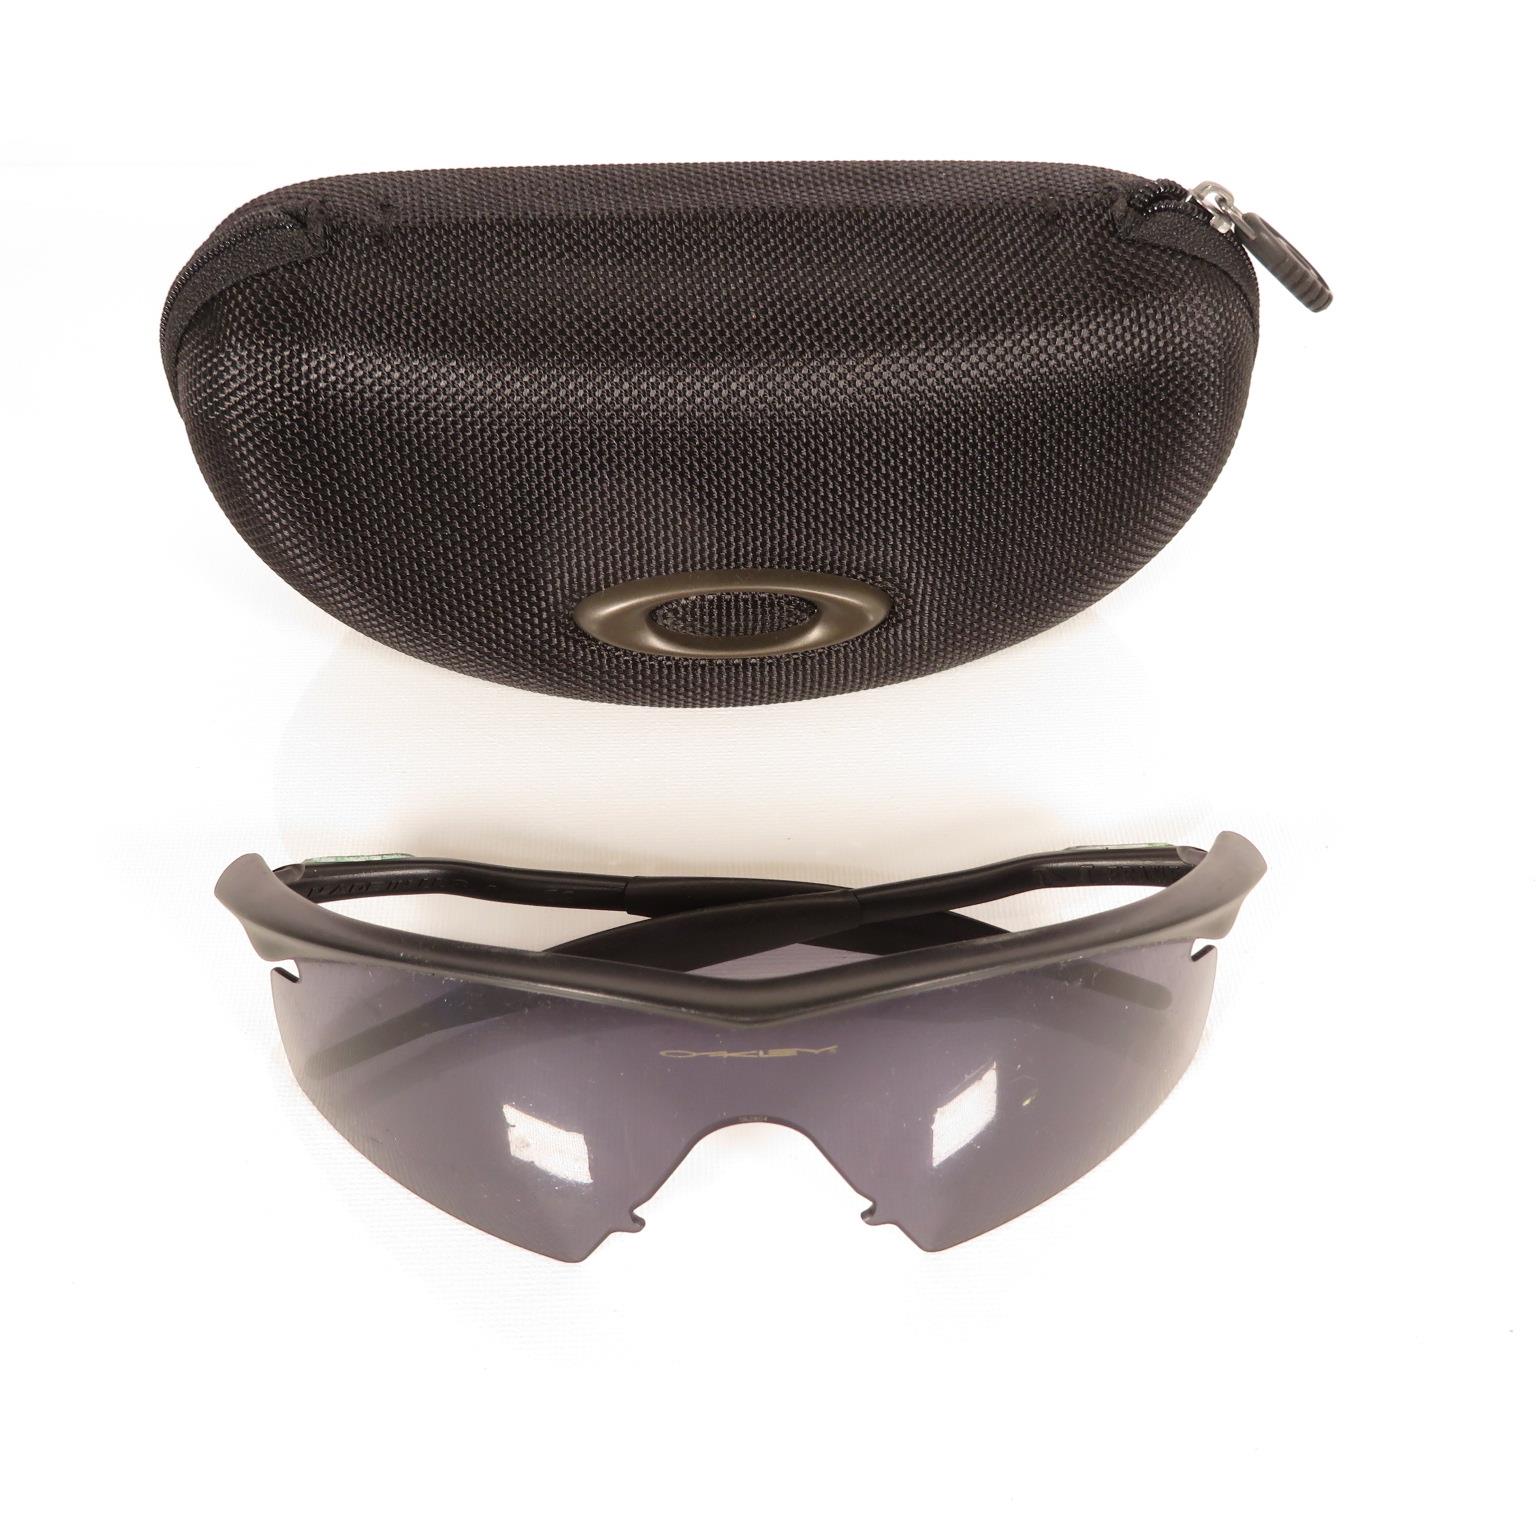 Pair of Porsche Folding Sunglasses, Per Sol folding Sunglasses, Oakley sunglasses and Porsche design - Bild 2 aus 17